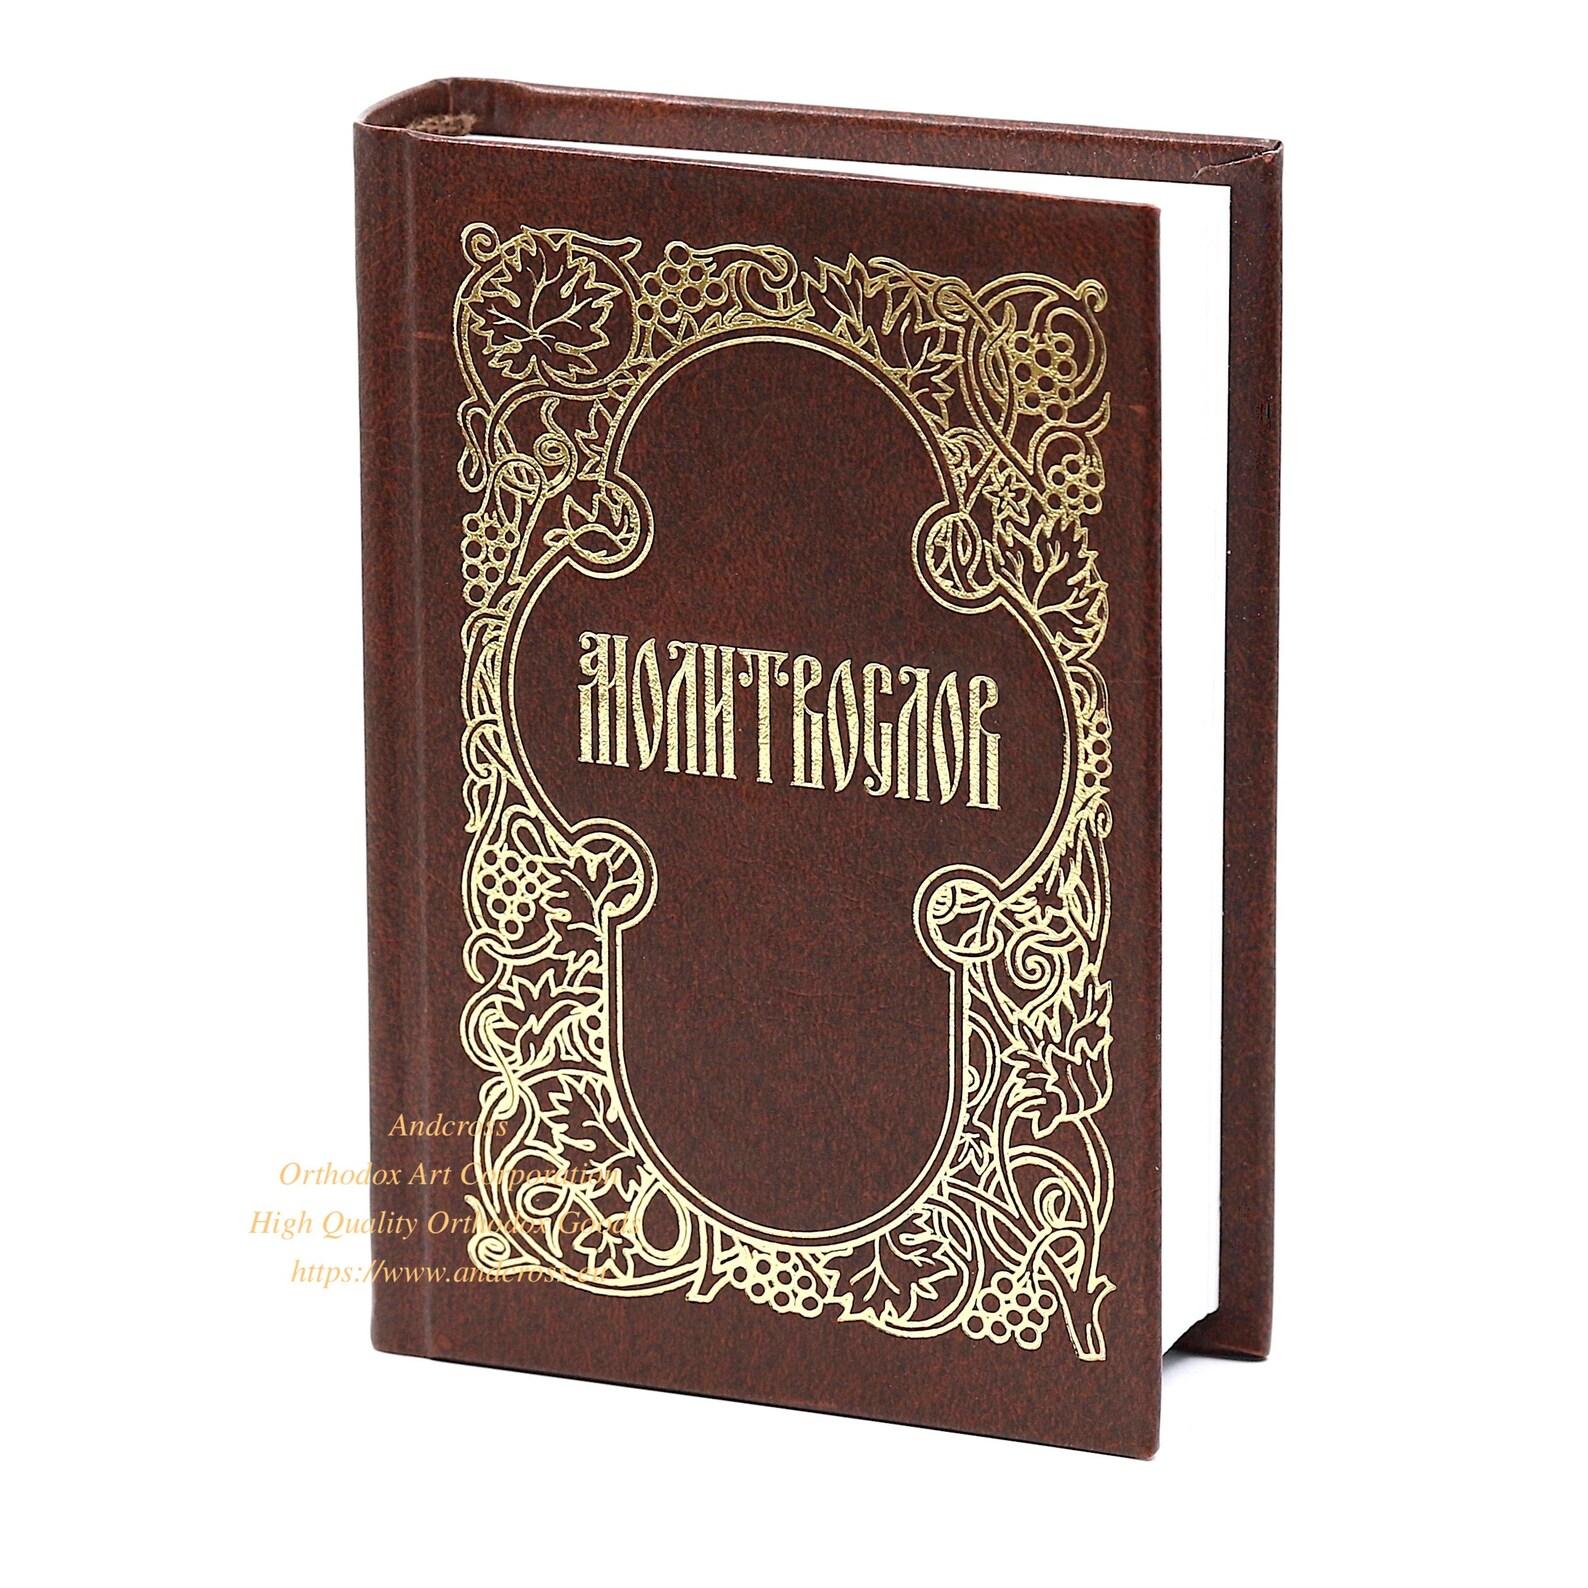 Orthodox Pocket Prayer Book